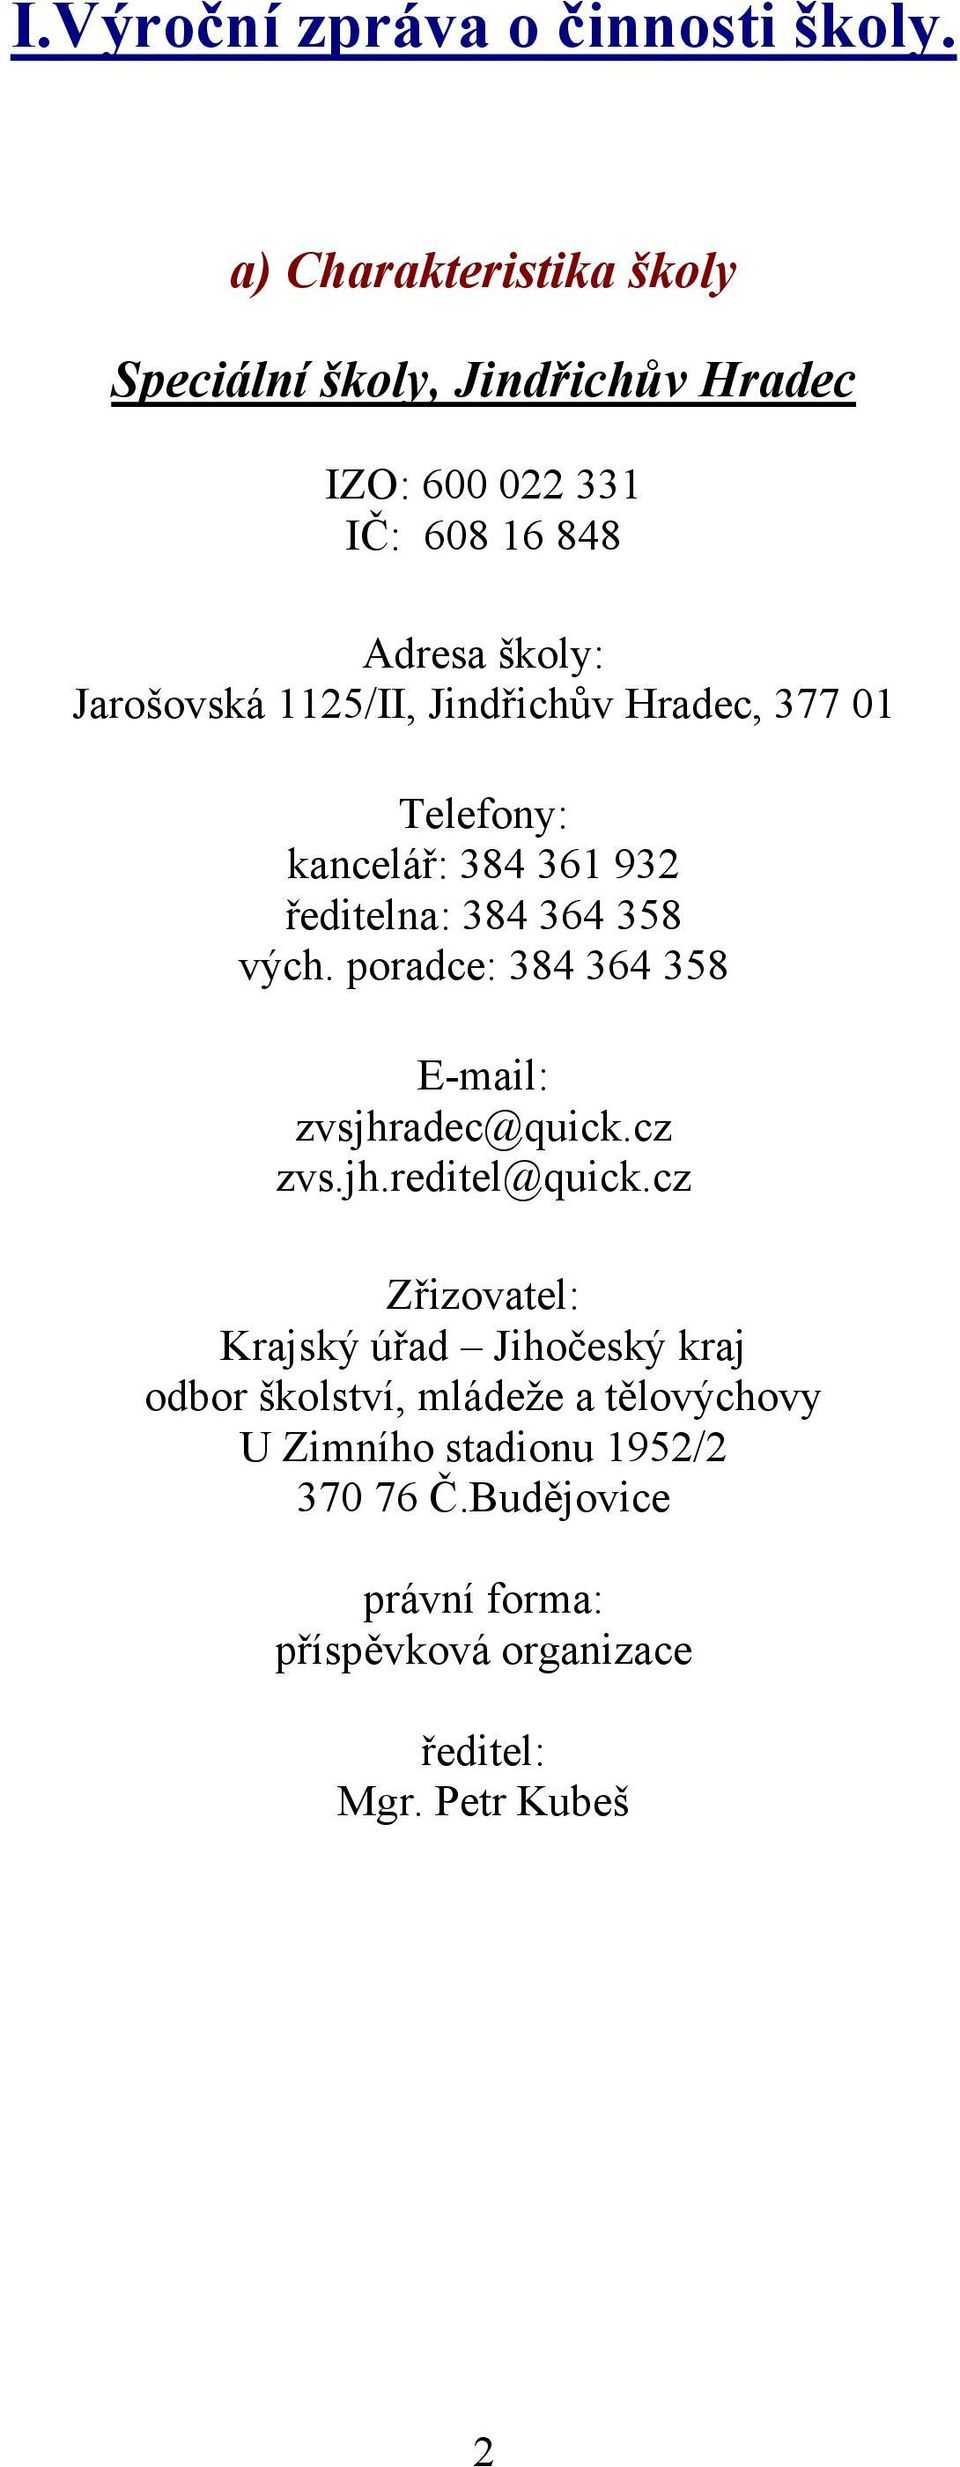 Jindřichův Hradec, 377 01 Telefony: kancelář: 384 361 932 ředitelna: 384 364 358 vých.